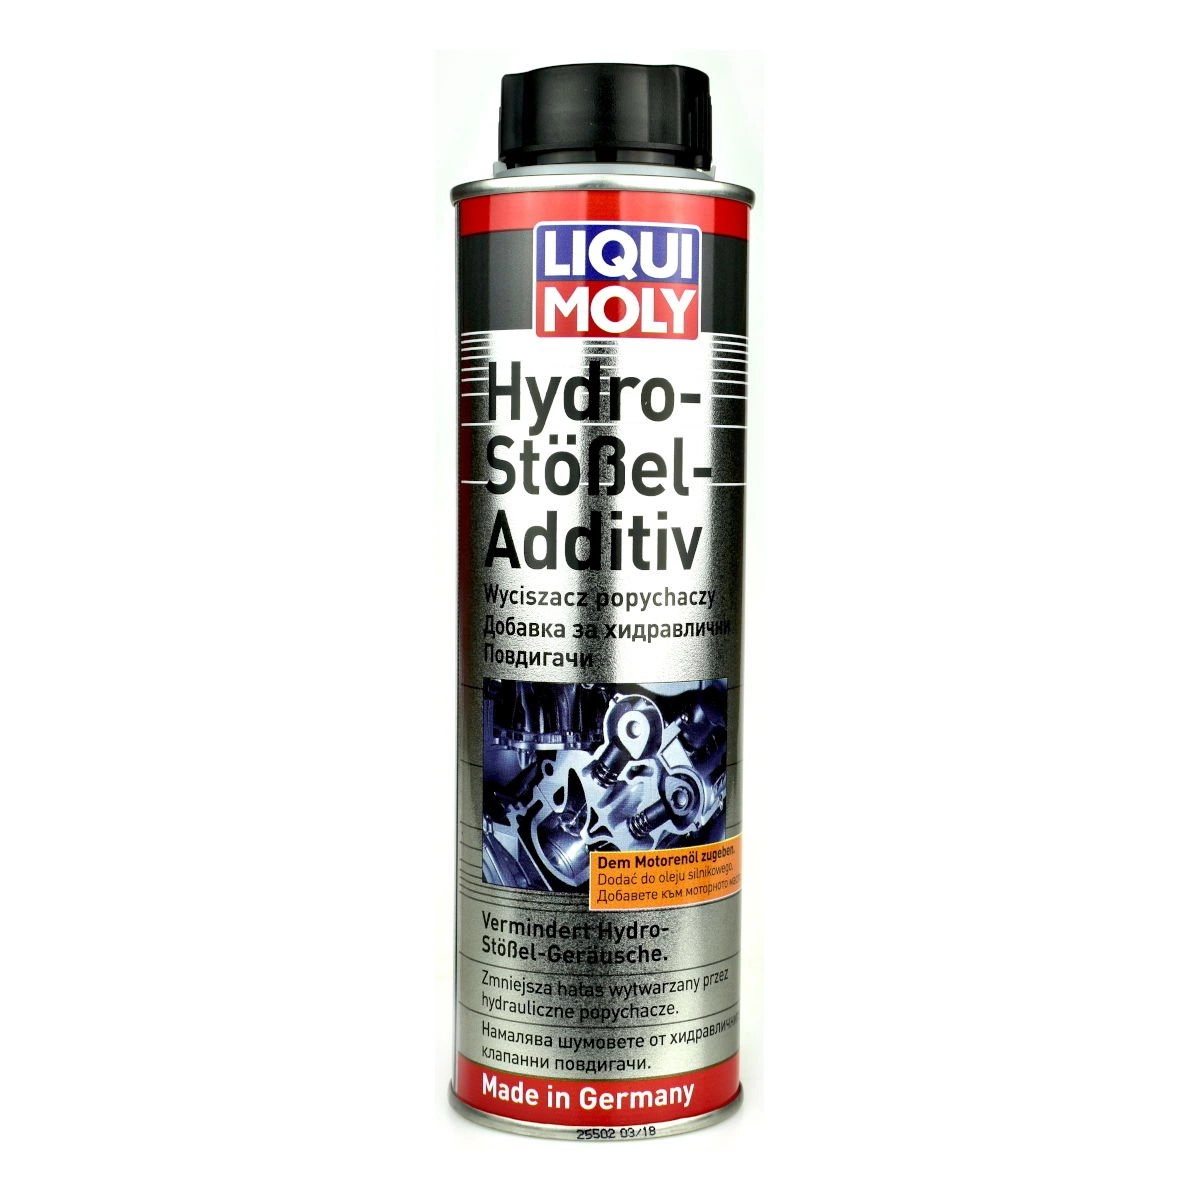 Liqui Moly 8345 Hydro-Stossel Additiv - do wyciszania popychaczy 300ml •  autokosmetyki •